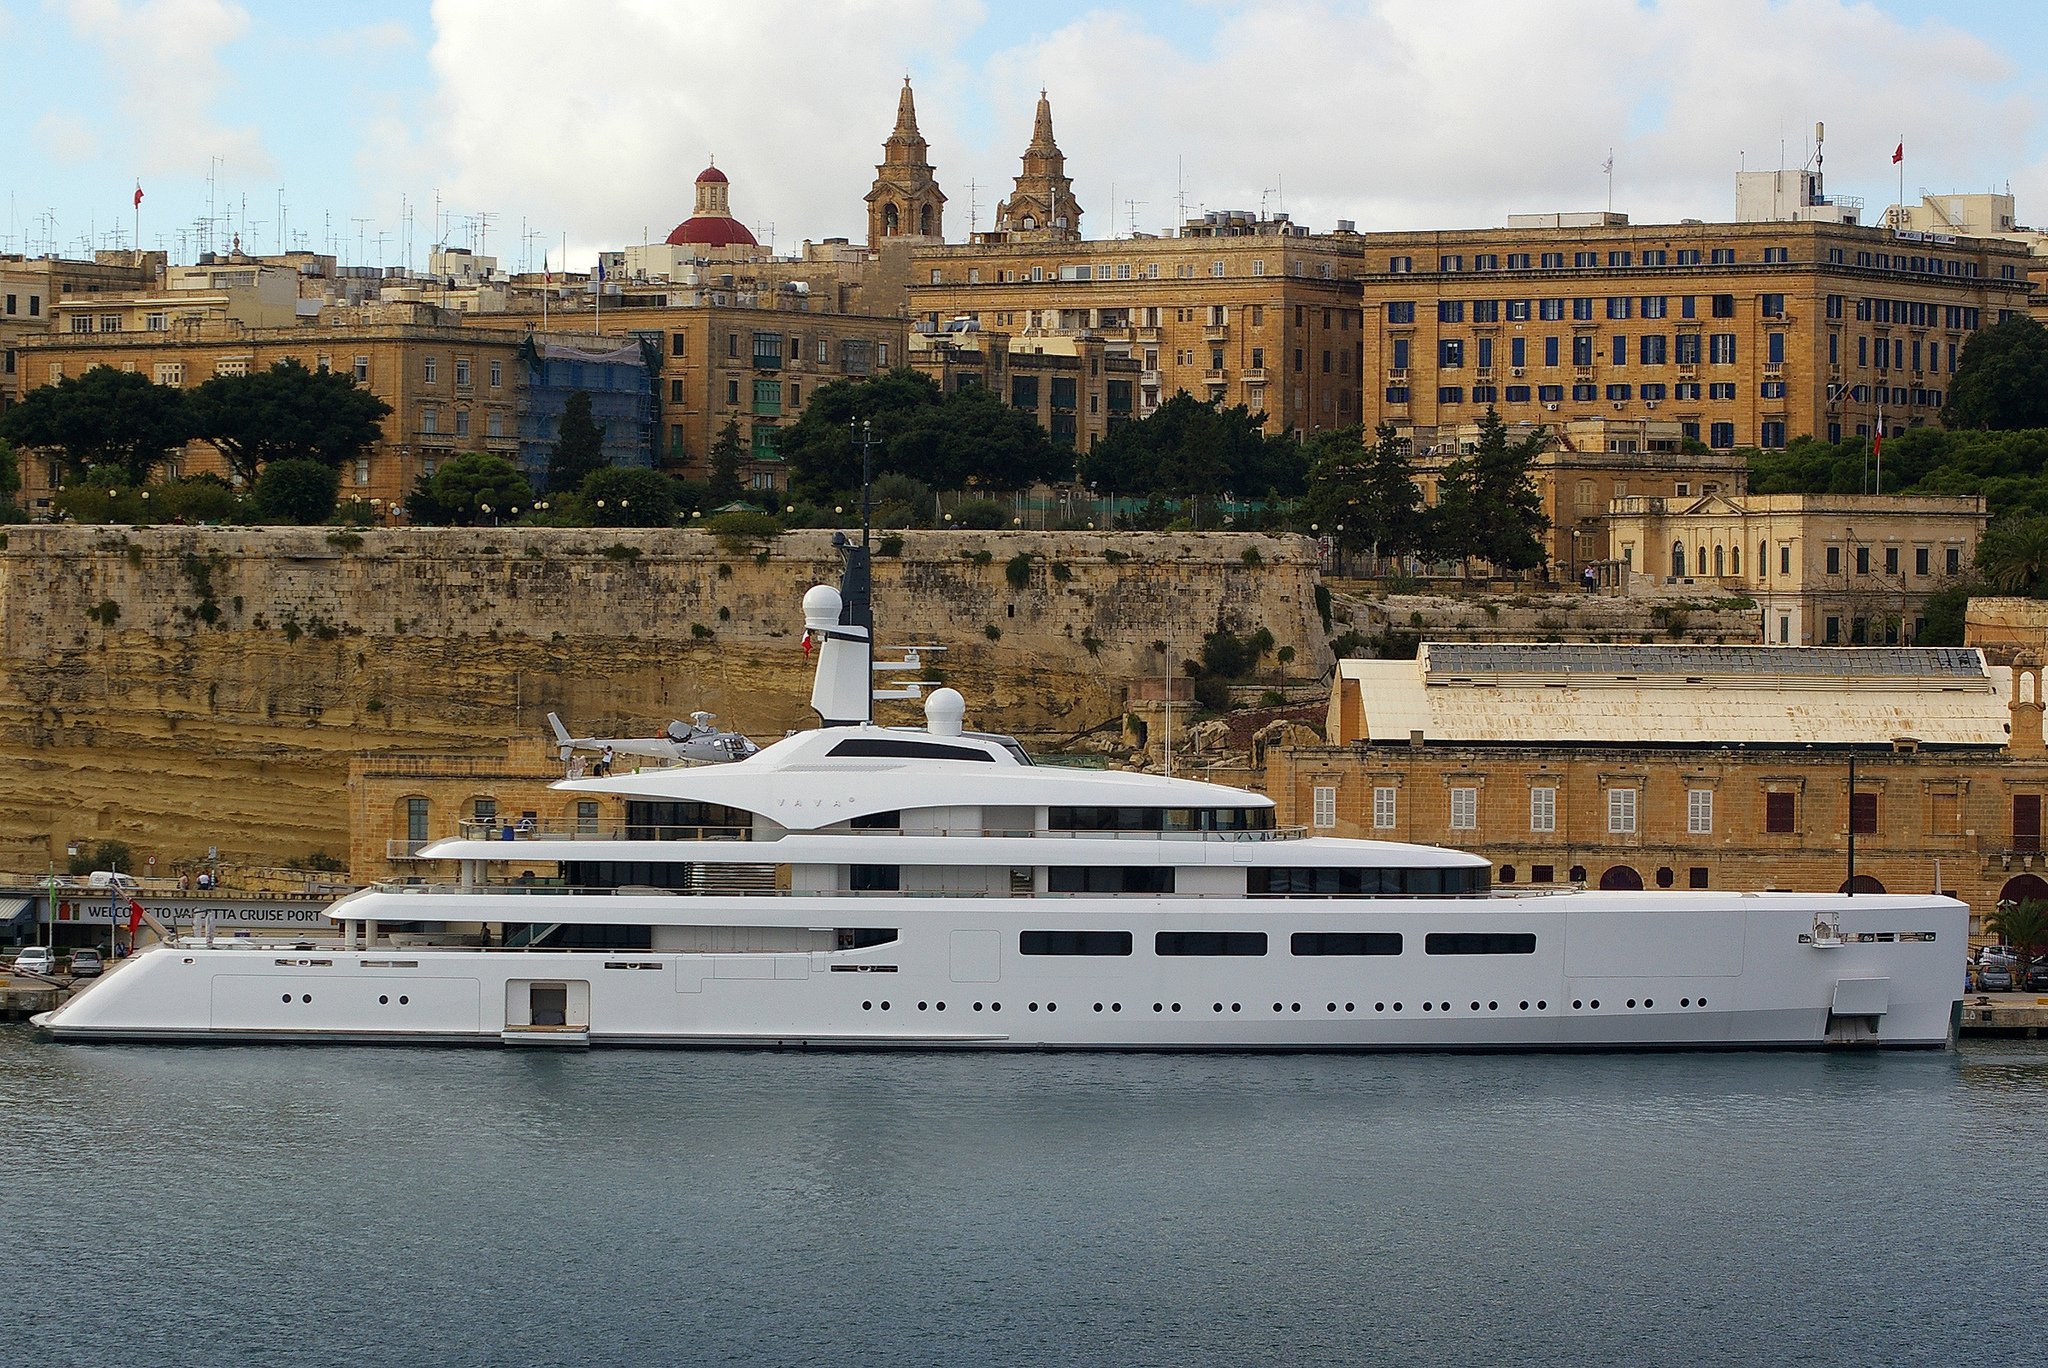 VAVA II yacht – Devonport – 2012 – owner Ernesto Bertarelli